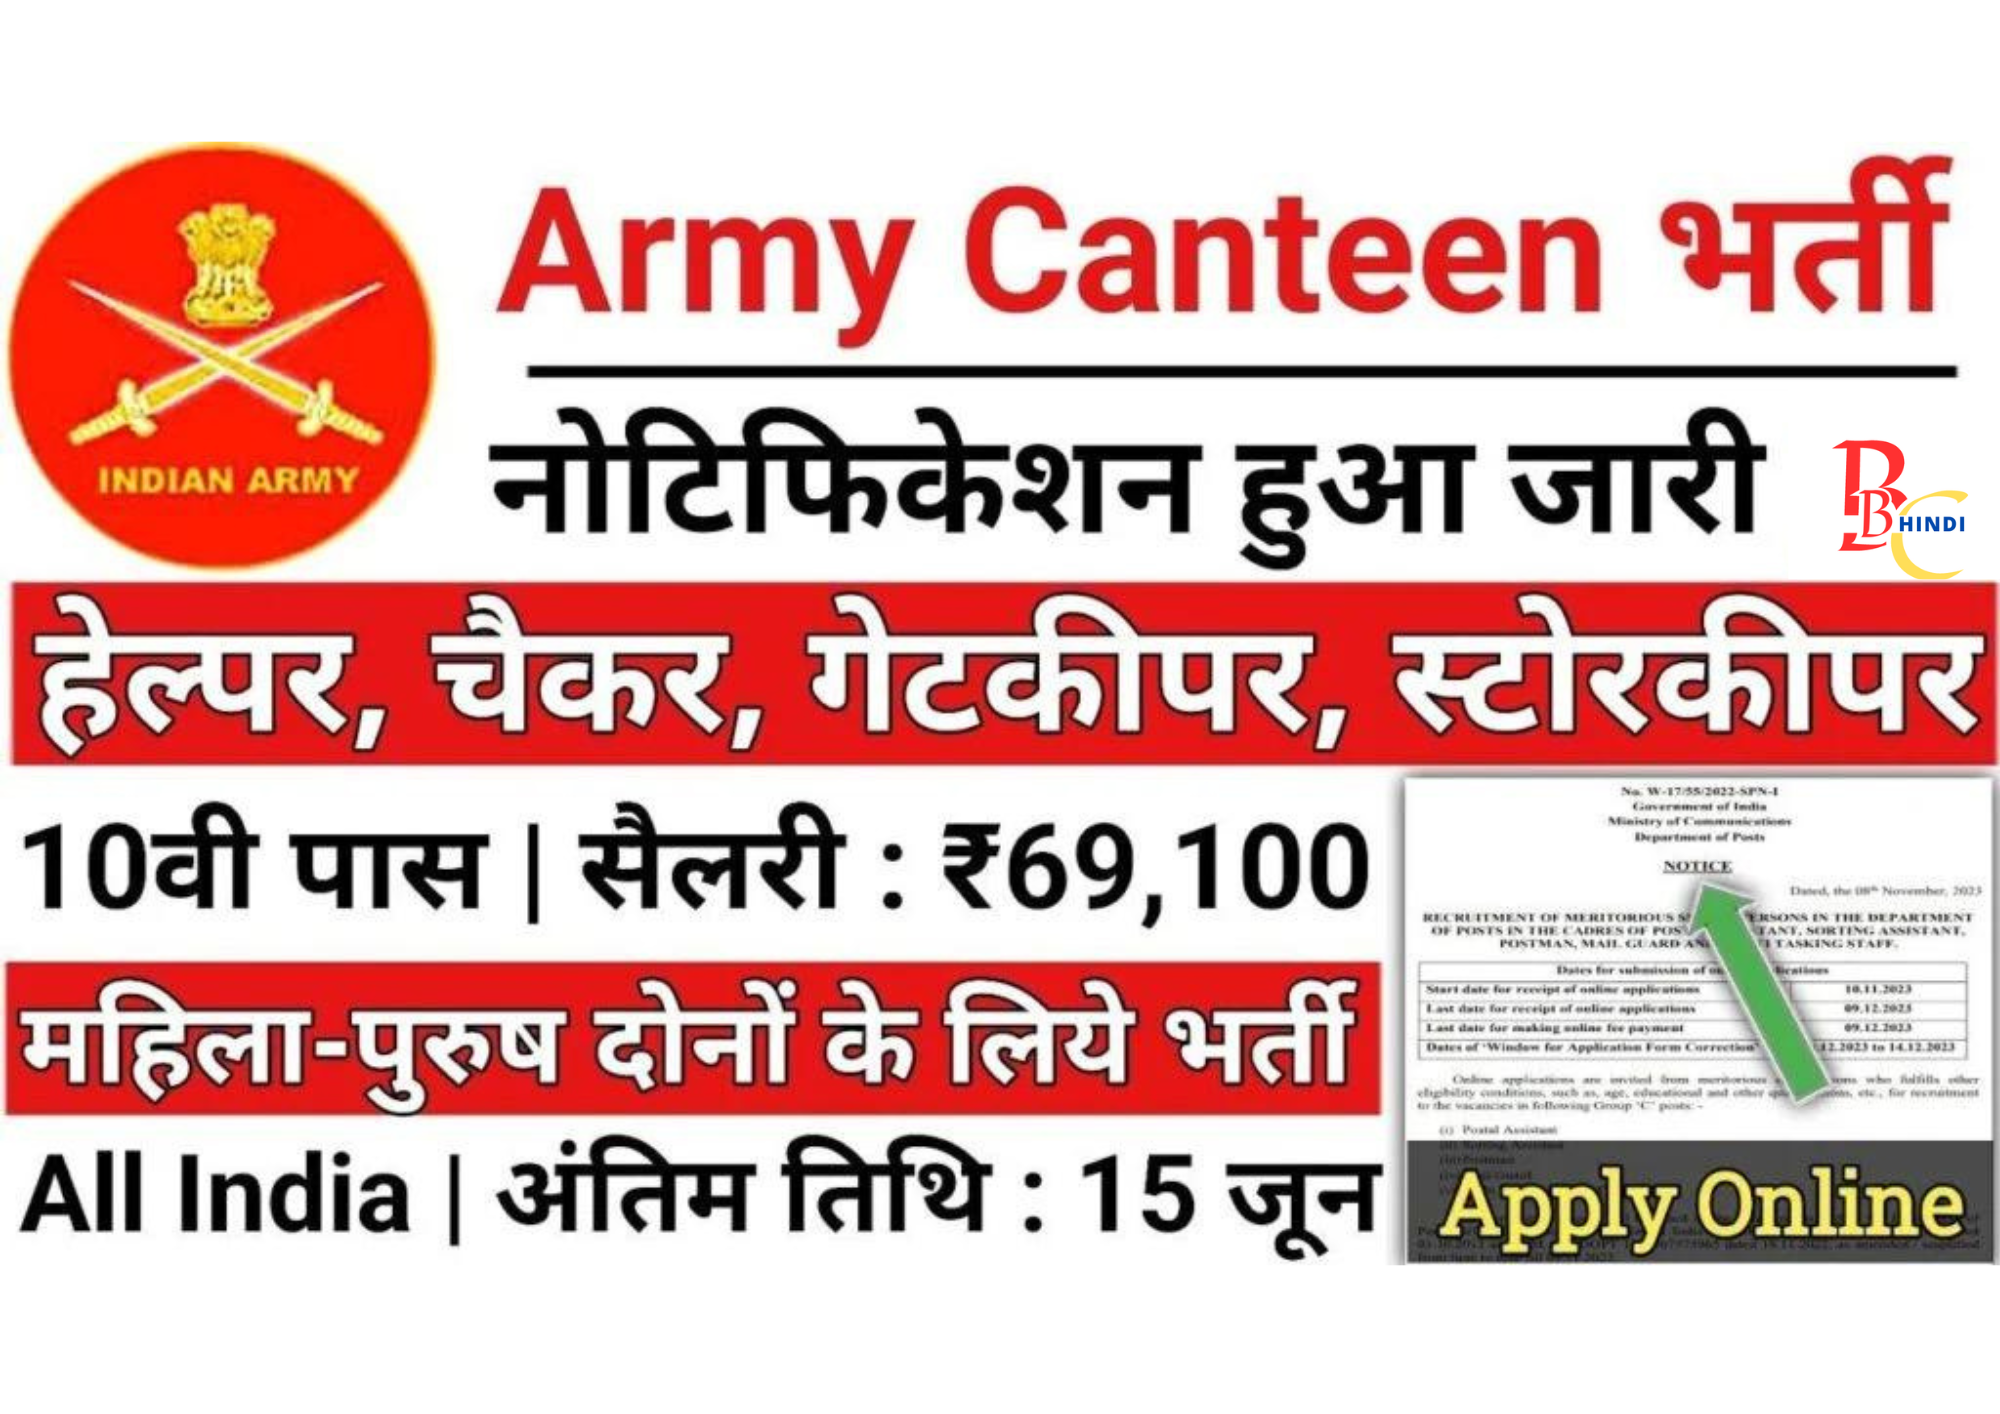 Army Canteen Vacancy